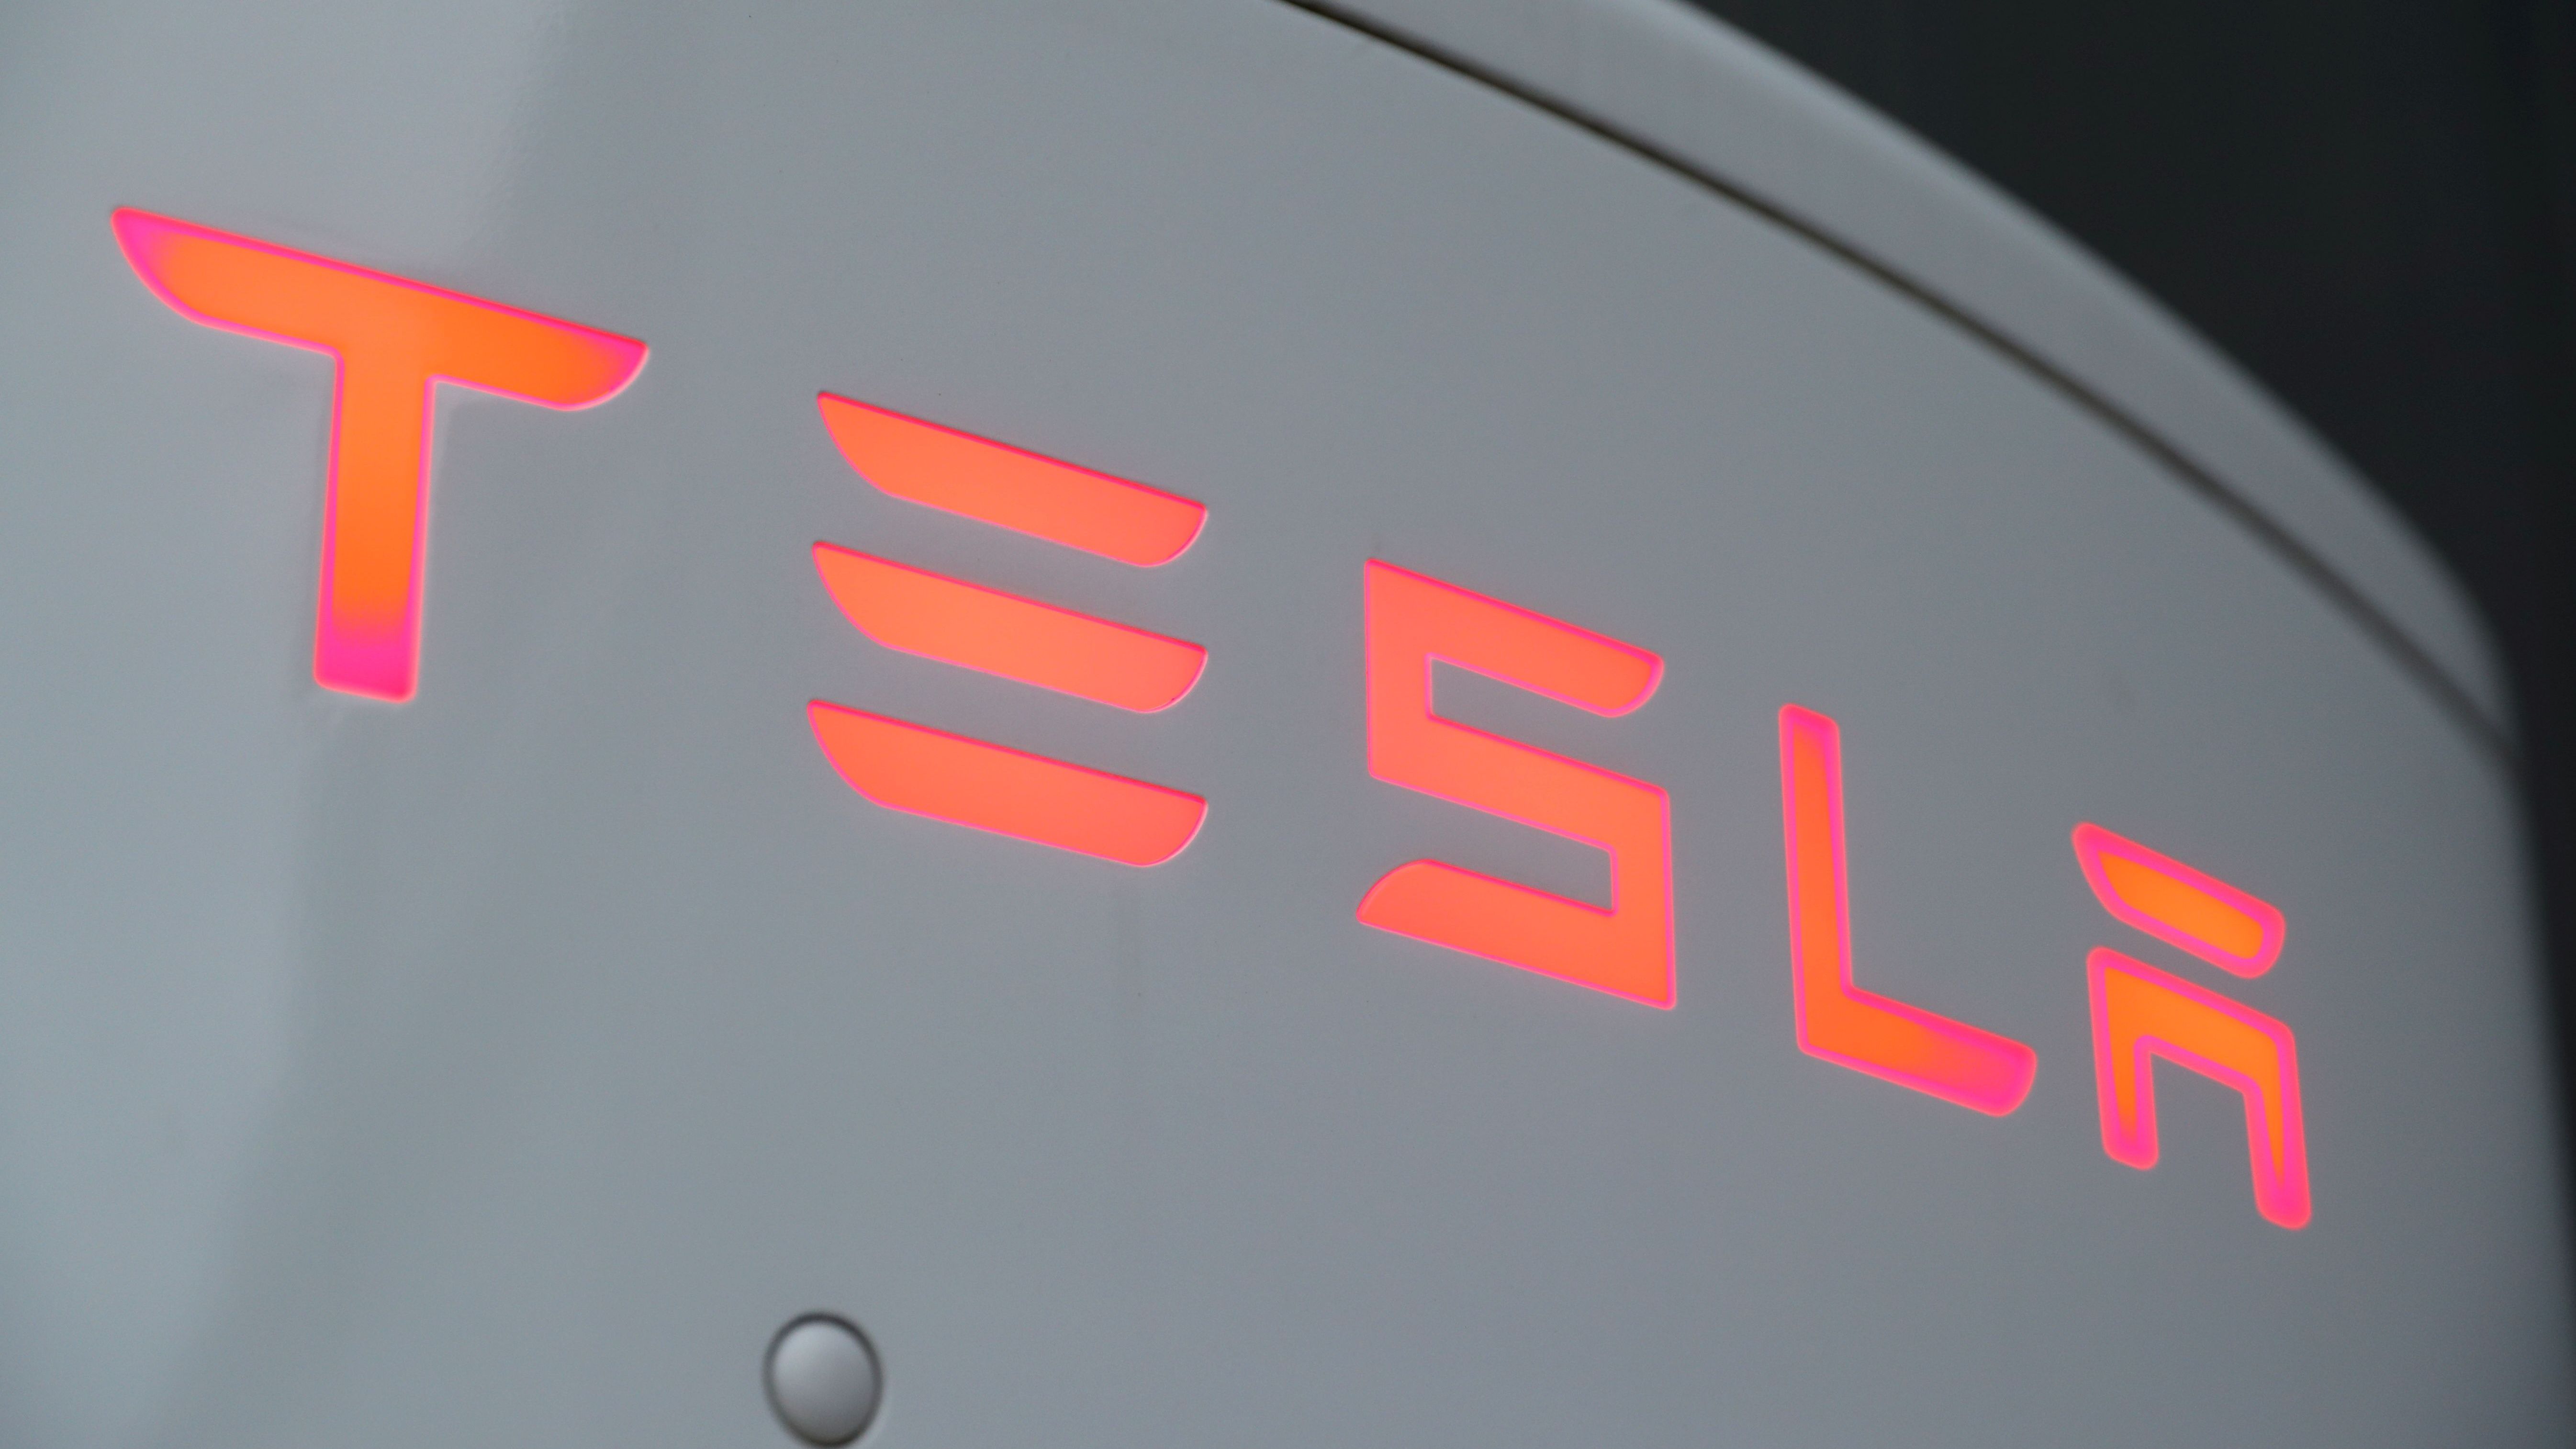 Tesla ist als Autohersteller, der neben Elektroautos auch Batteriespeicher und Photovoltaikanlagen herstellt, bekannt. Die amerikanische Autofirma landet mit 1,04 Billionen US-Dollar auf Platz sechs der wertvollsten Unternehmen.